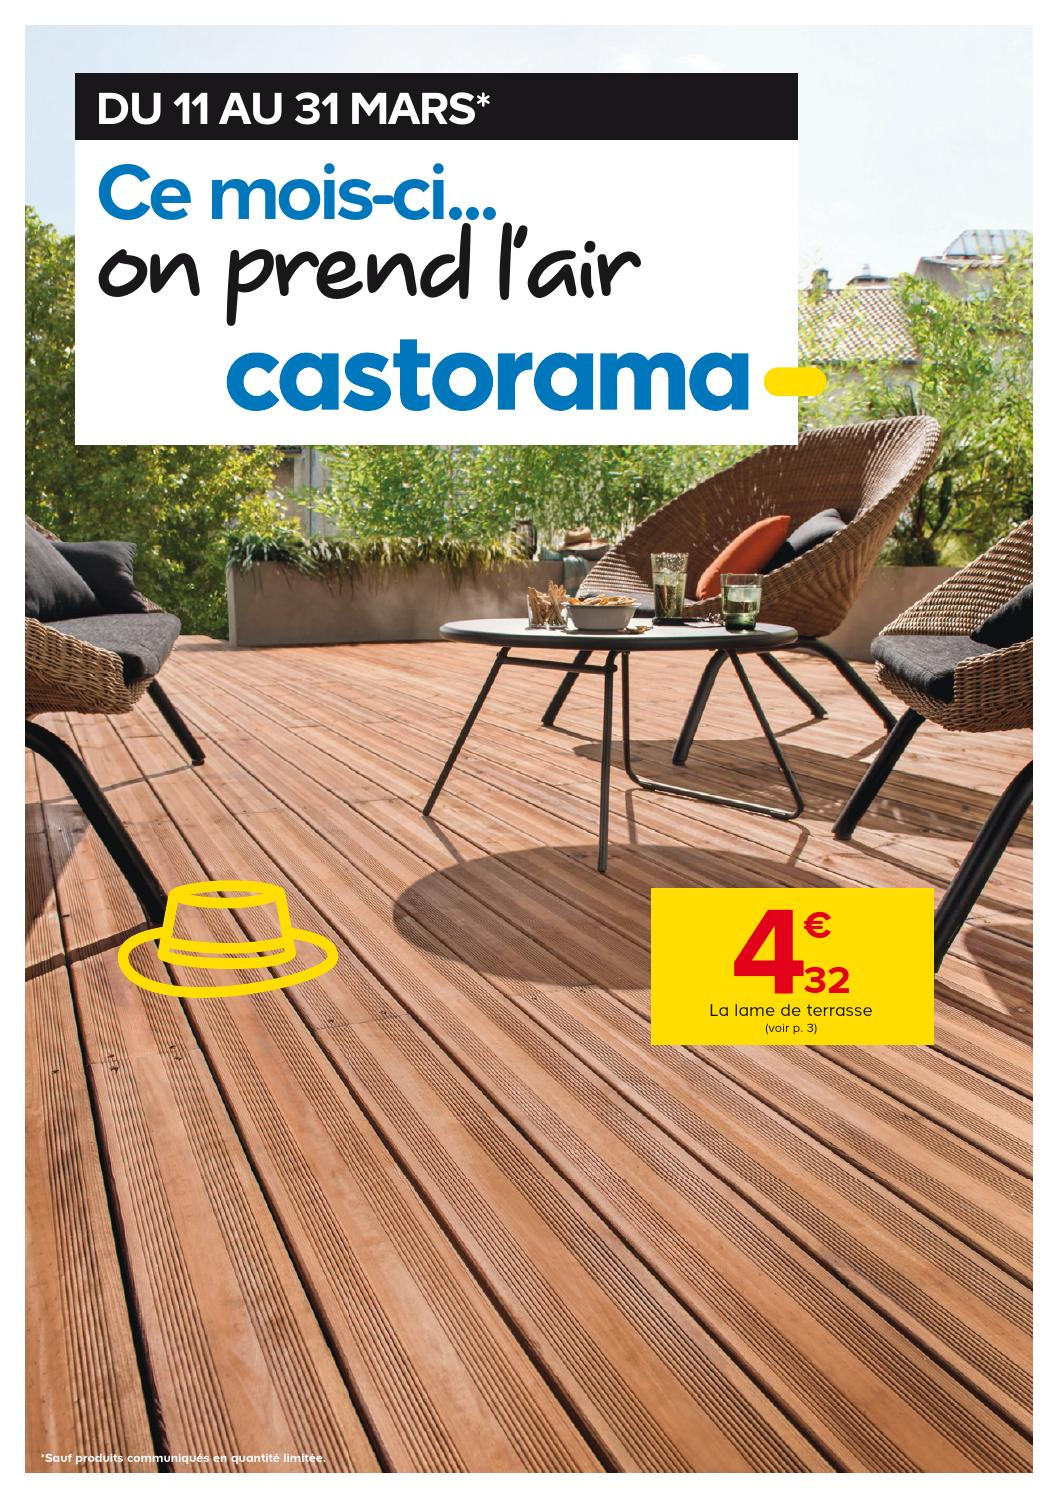 Castorama Catalogue 11 31Mars2015 By Promocatalogues - Issuu destiné Plot Reglable Terrasse Castorama